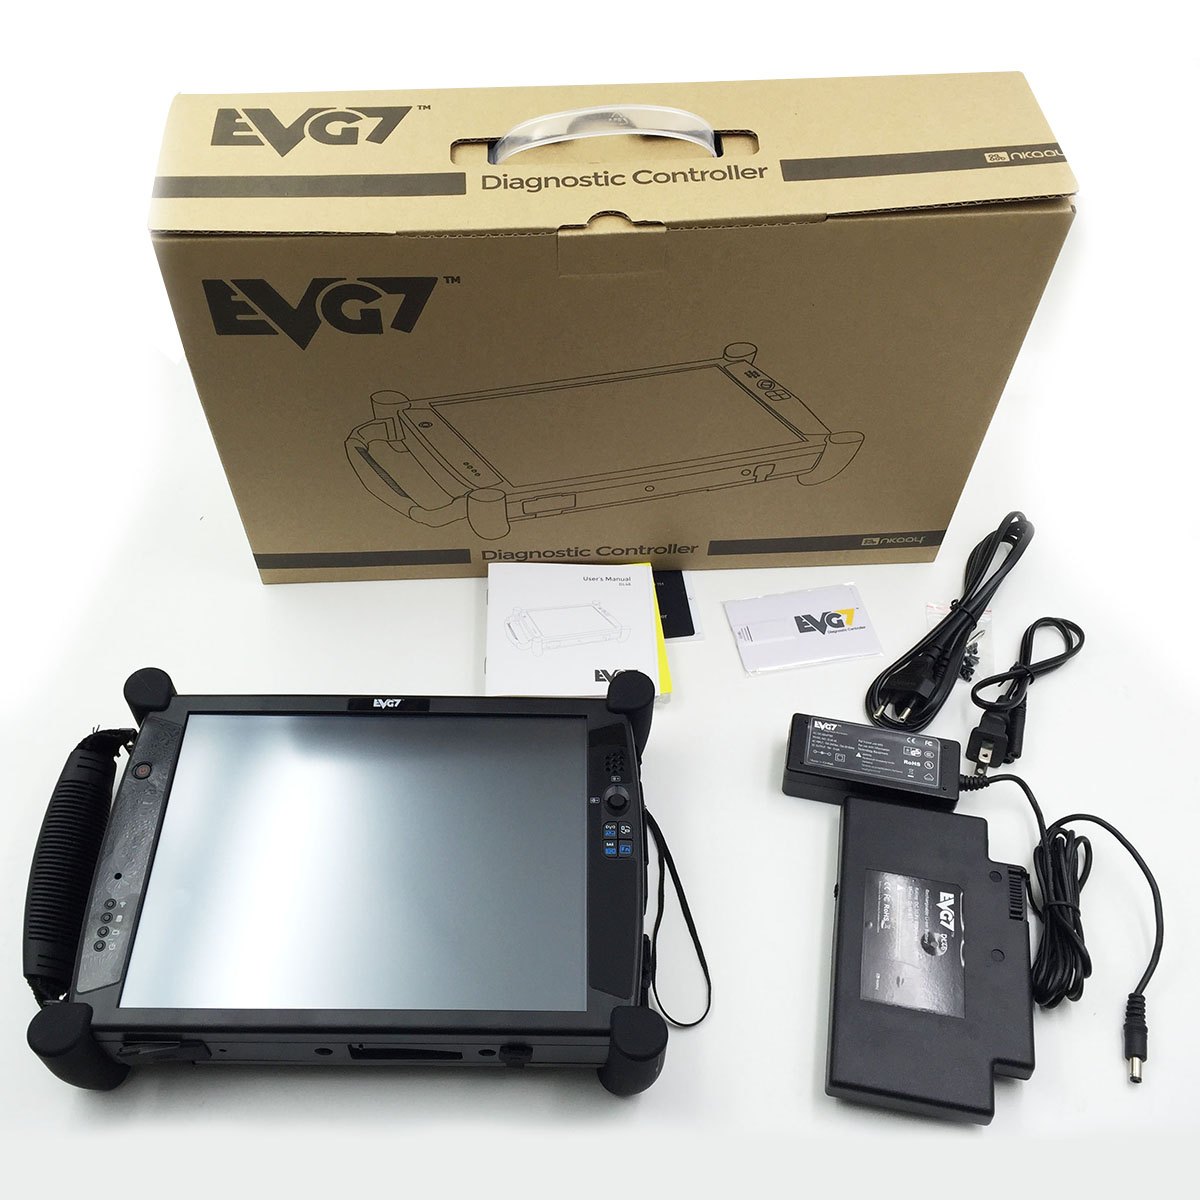 evg7-diagnostic-controller-tablet-pc-dl46-black